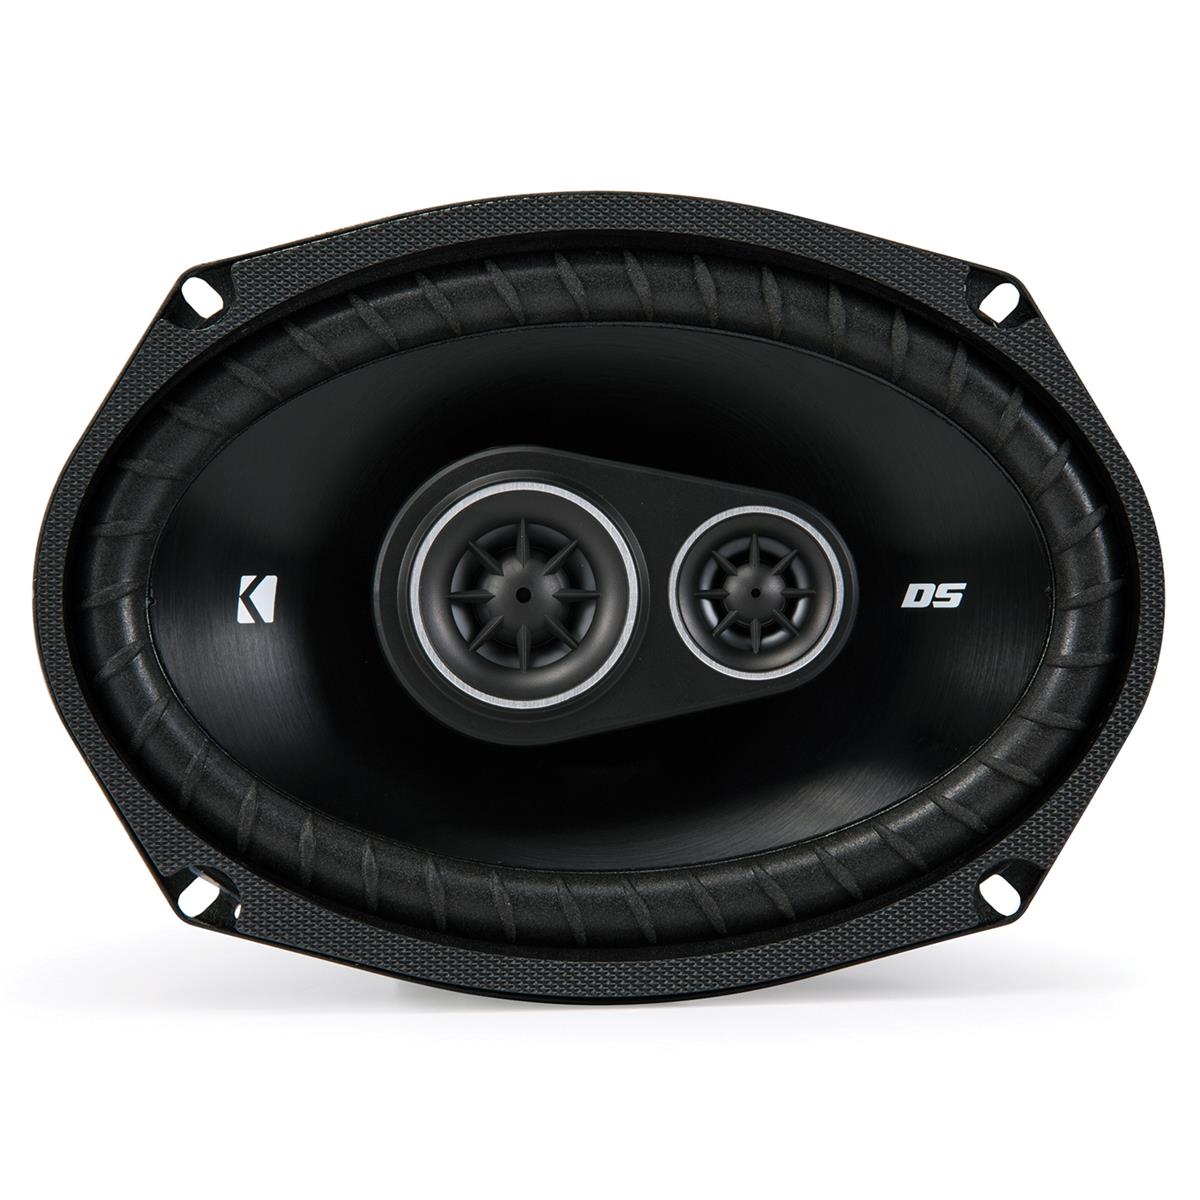 Kicker DSC6930 DS Series 6x9" 4-Ohm 3-Way Speaker